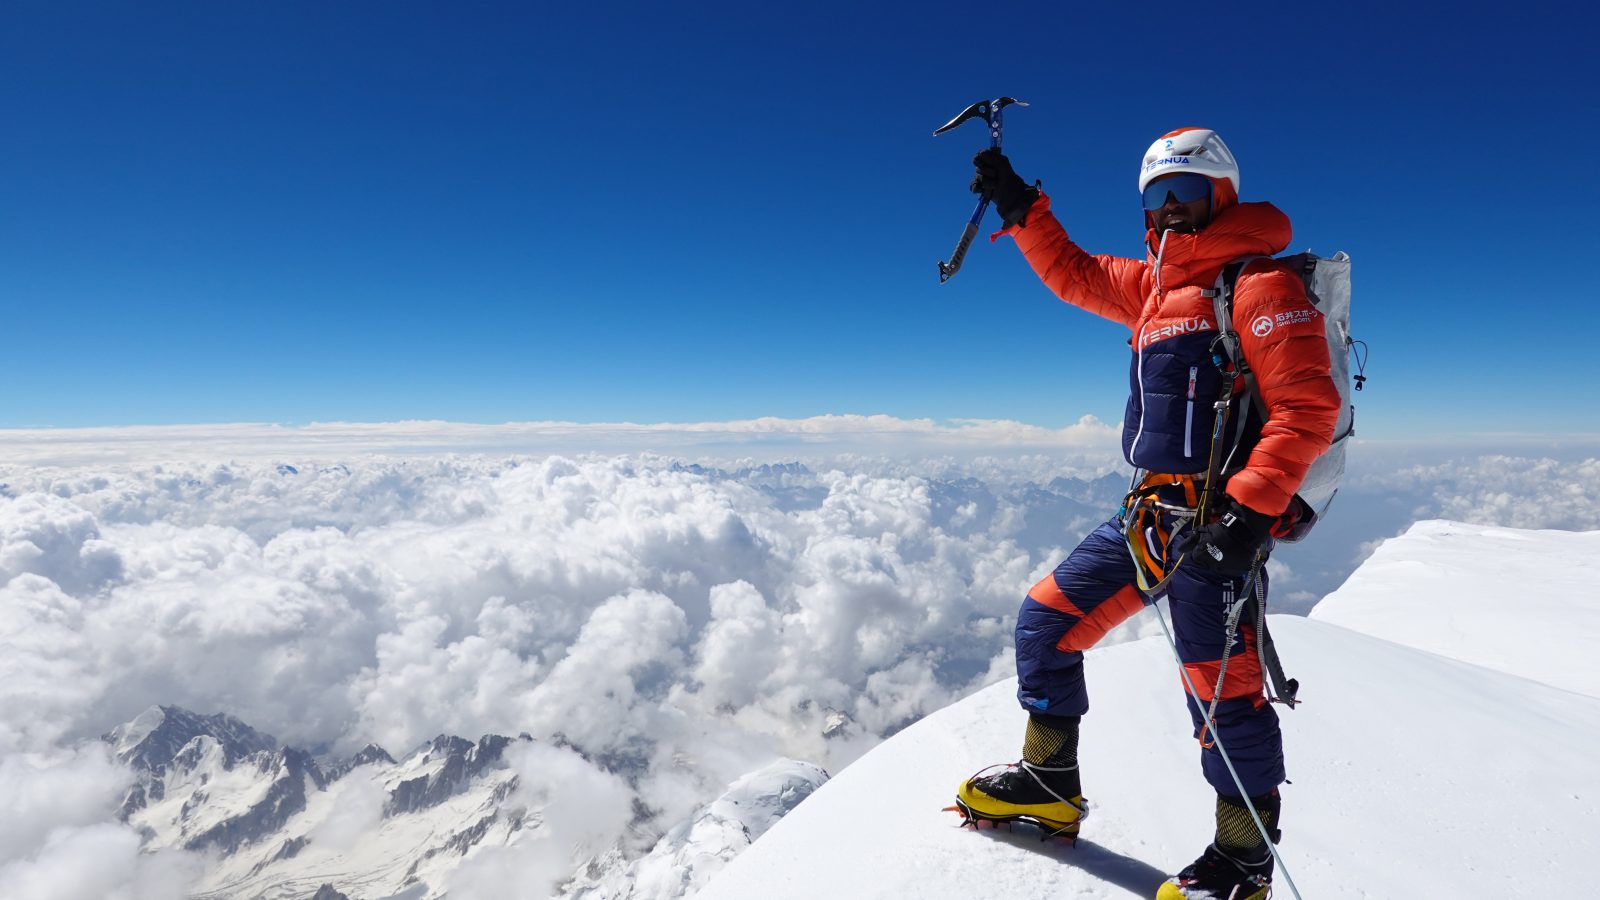 海外紙が称賛「日本の平出和也は21世紀最高の登山家だ」 | アウトドア店に勤務するピオレドール賞受賞者